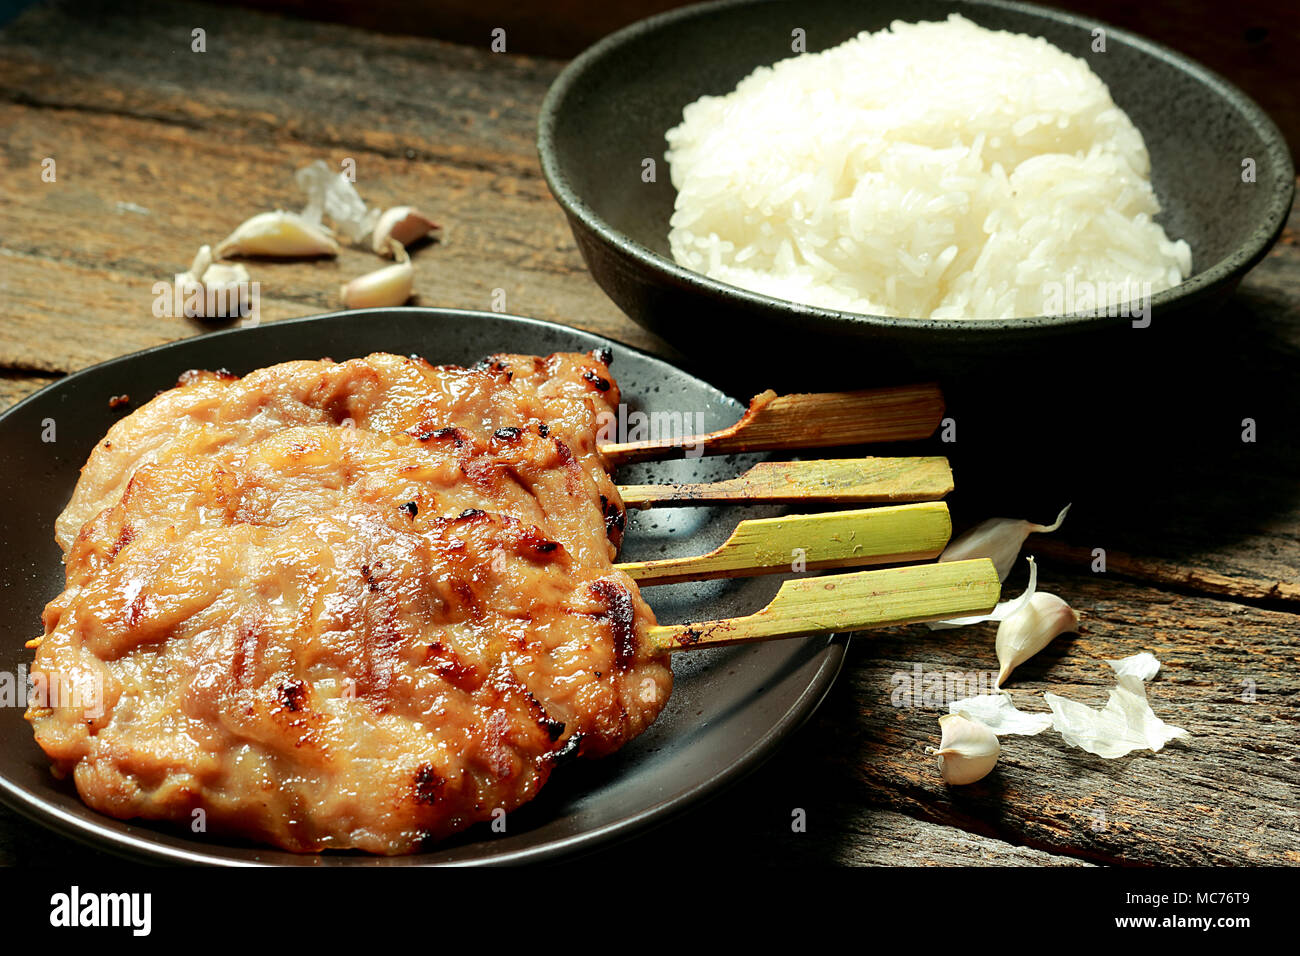 Dans cette photo, il y a de riz collant, le porc grillé. L'ail est un composant. Banque D'Images